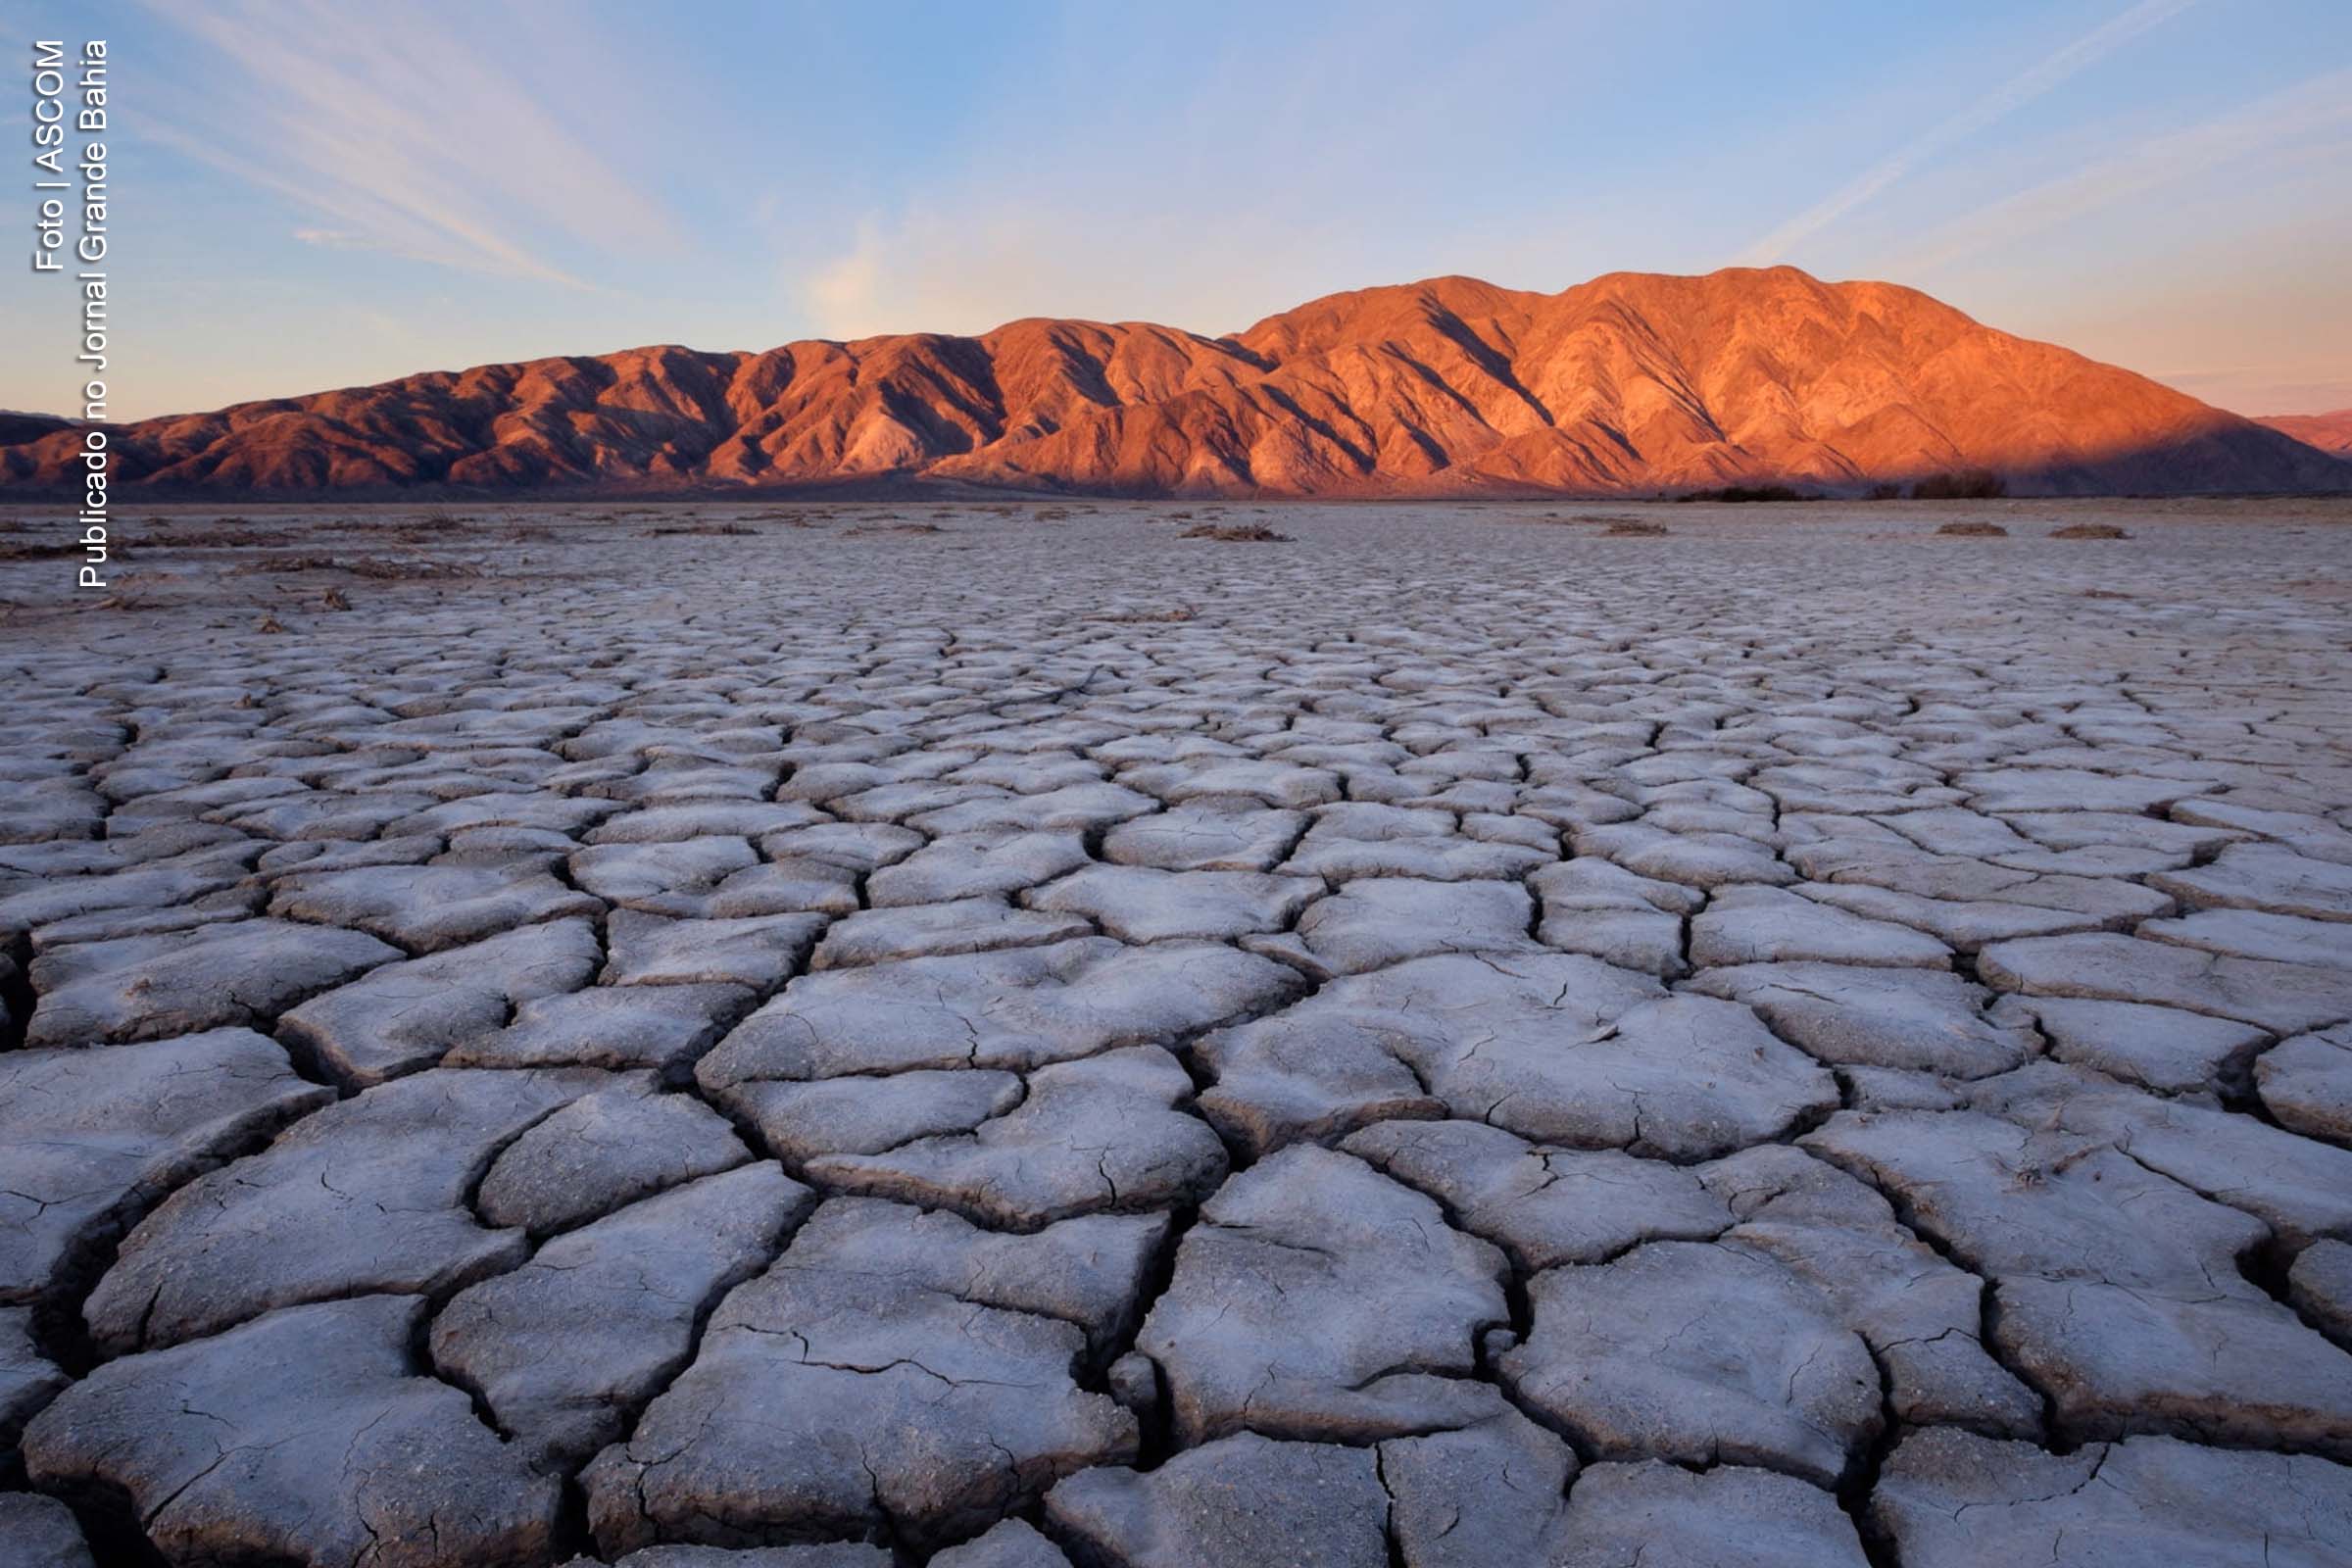 O Vale da Morte é um vale desértico localizado no leste da Califórnia, ao norte do deserto de Mojave, na fronteira com o Deserto da Grande Bacia. É um dos lugares mais quentes do mundo no auge do verão, juntamente com os desertos no Oriente Médio.